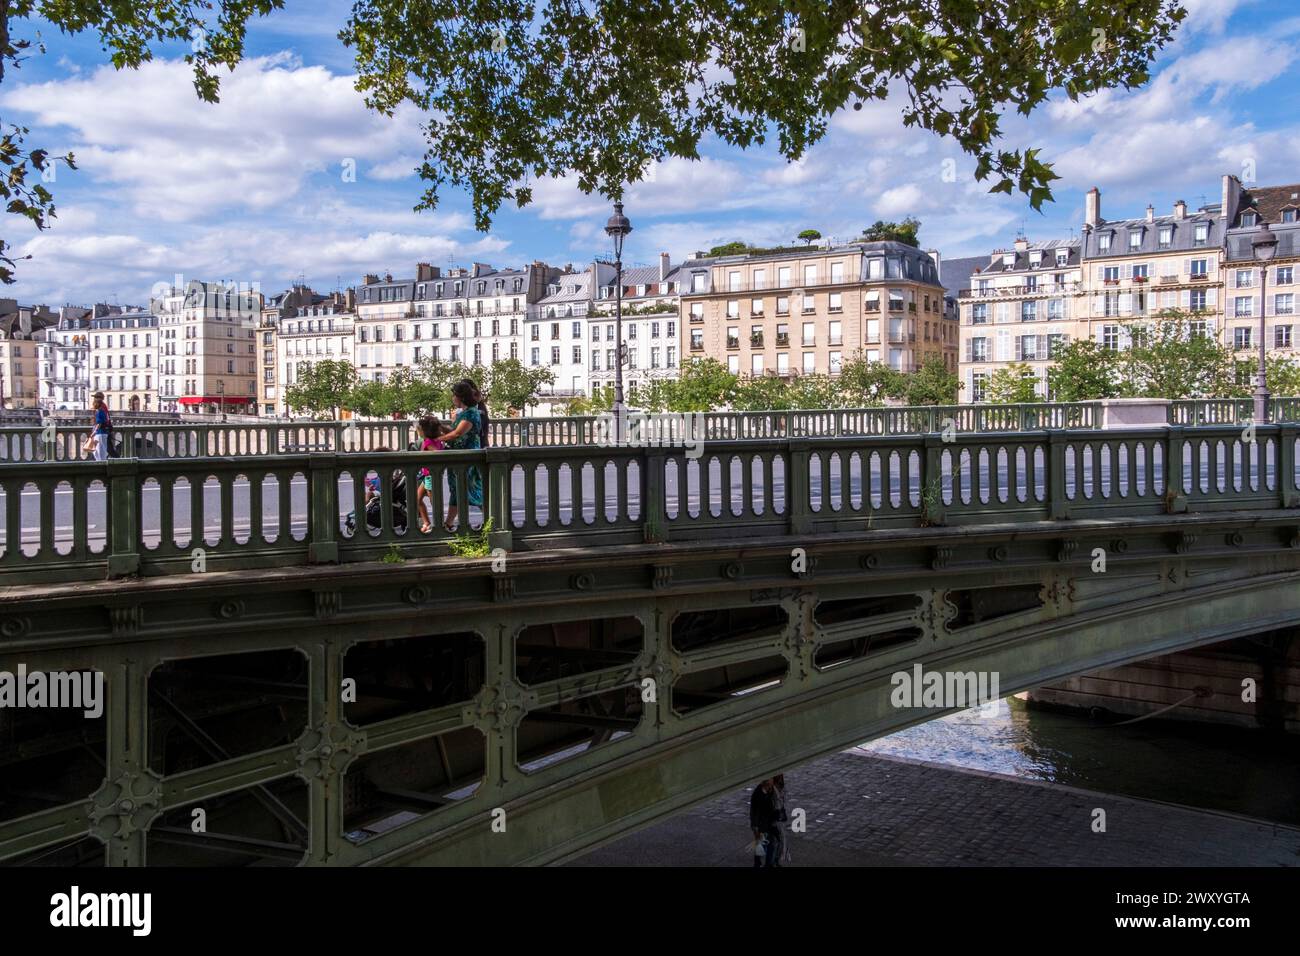 Paris (France):building facades along the quay “quai Betune” on the natural river island “ile Saint-Louis”, in Paris 4th arrondissement (district) Stock Photo